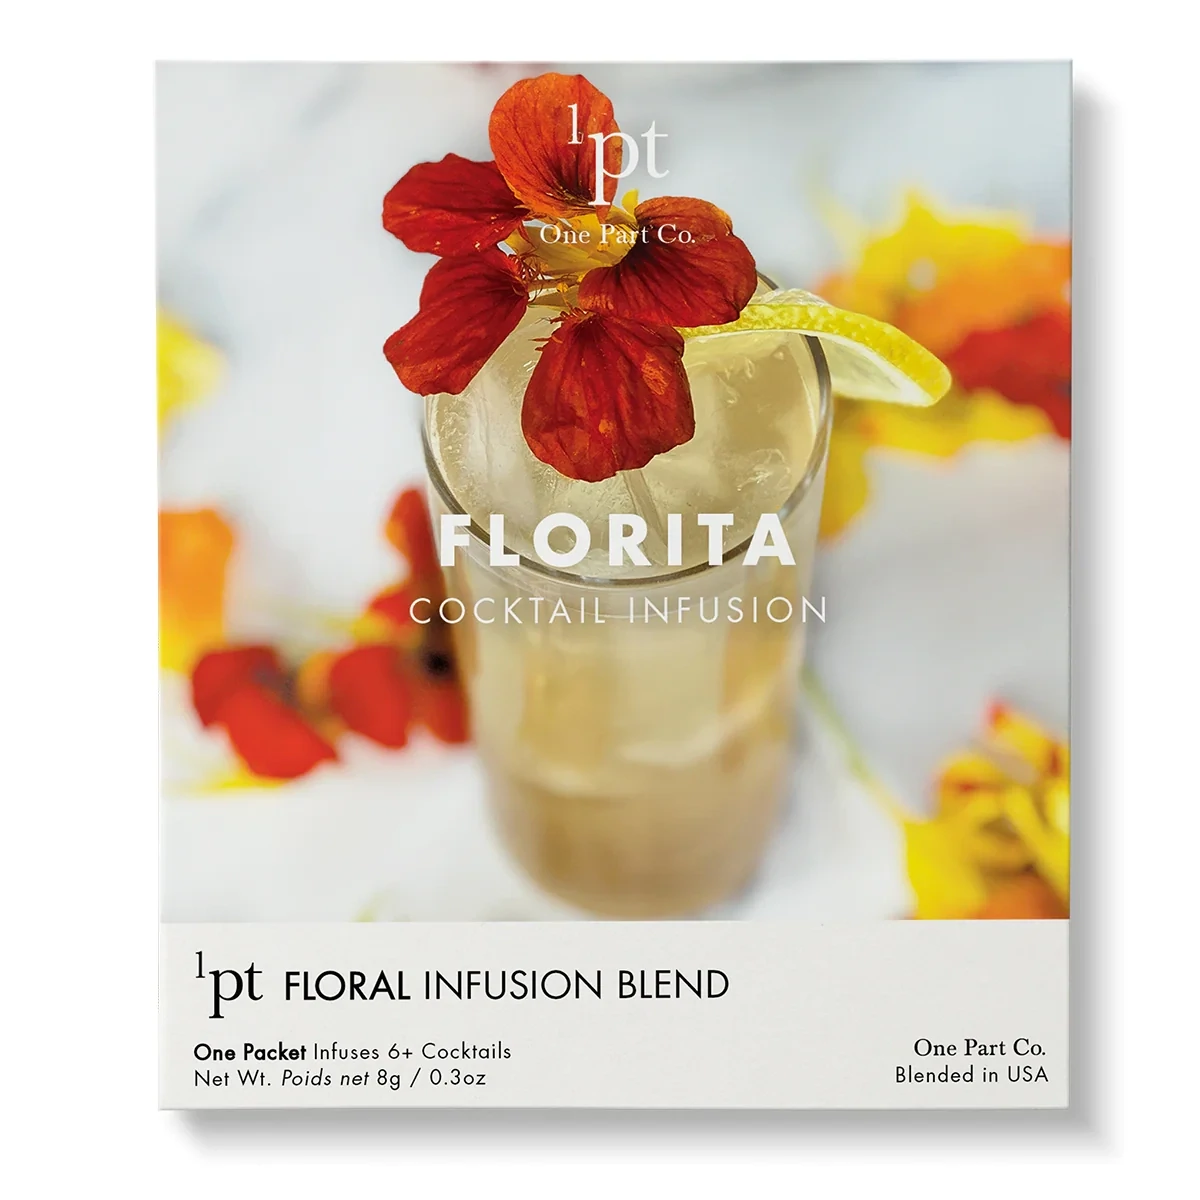 Florita Cocktail